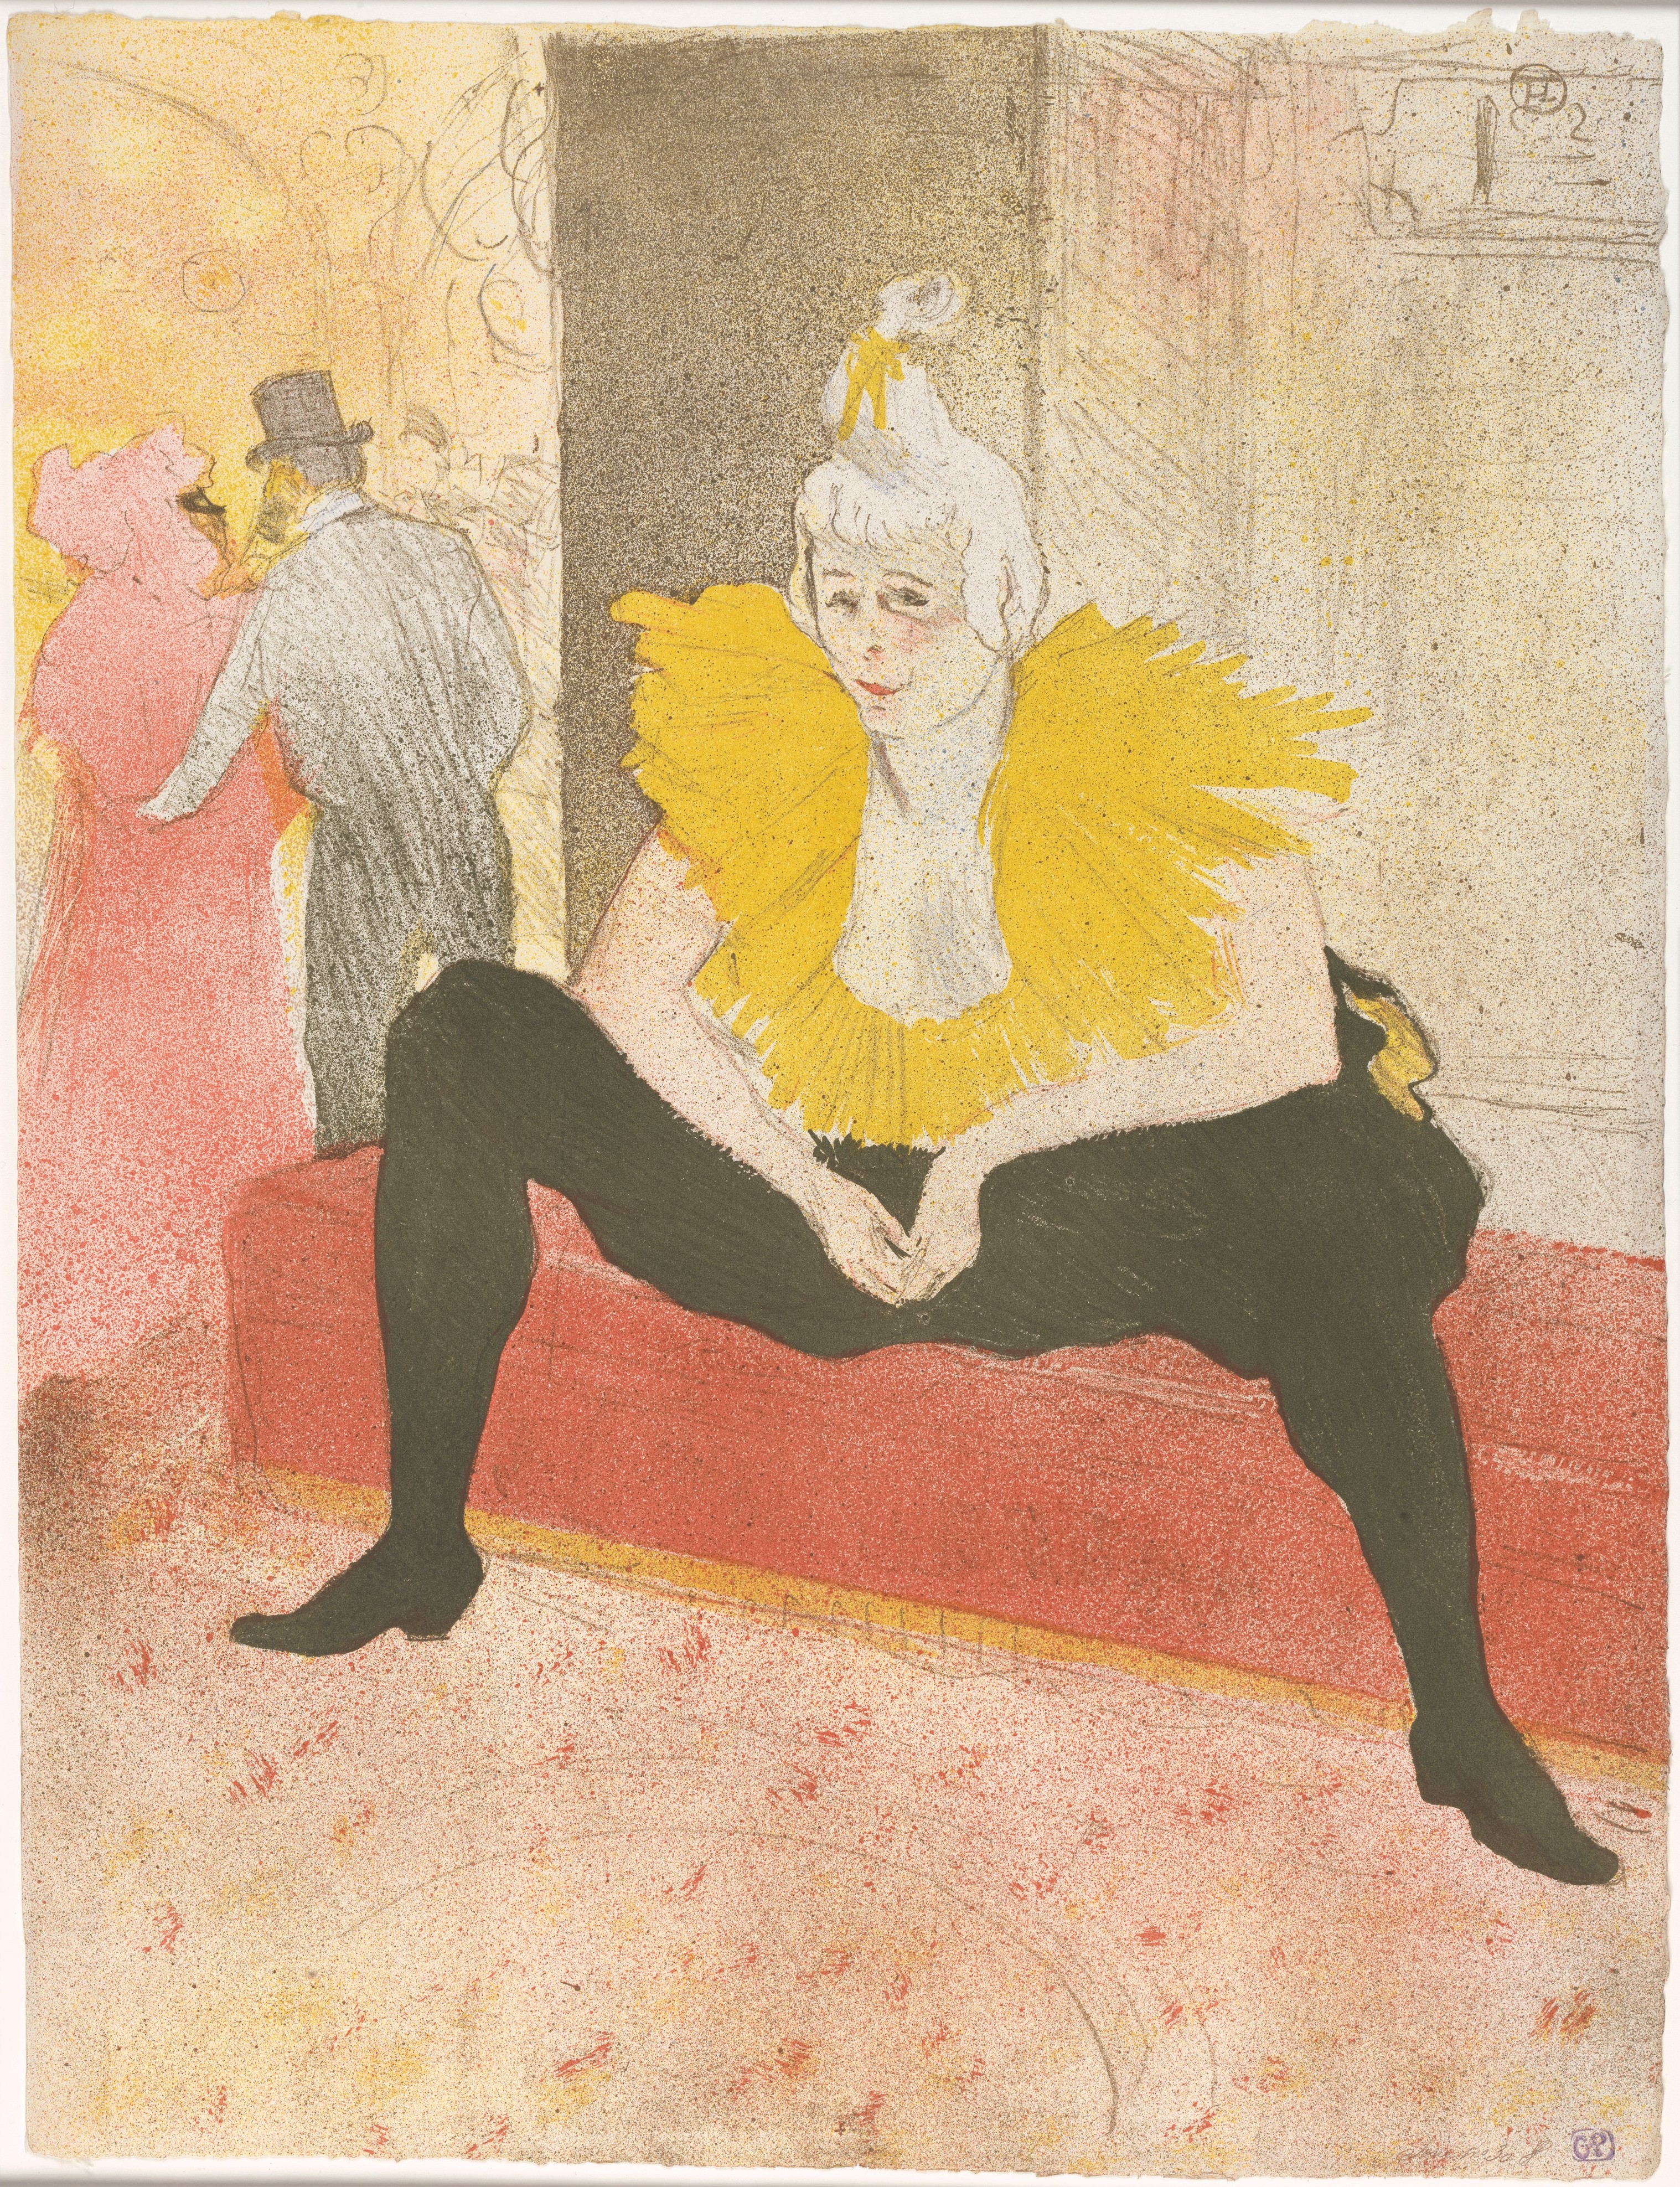 المهرج الجالس - الأنسة تشا- او-كا-و  by Henri de Toulouse-Lautrec - 1896 